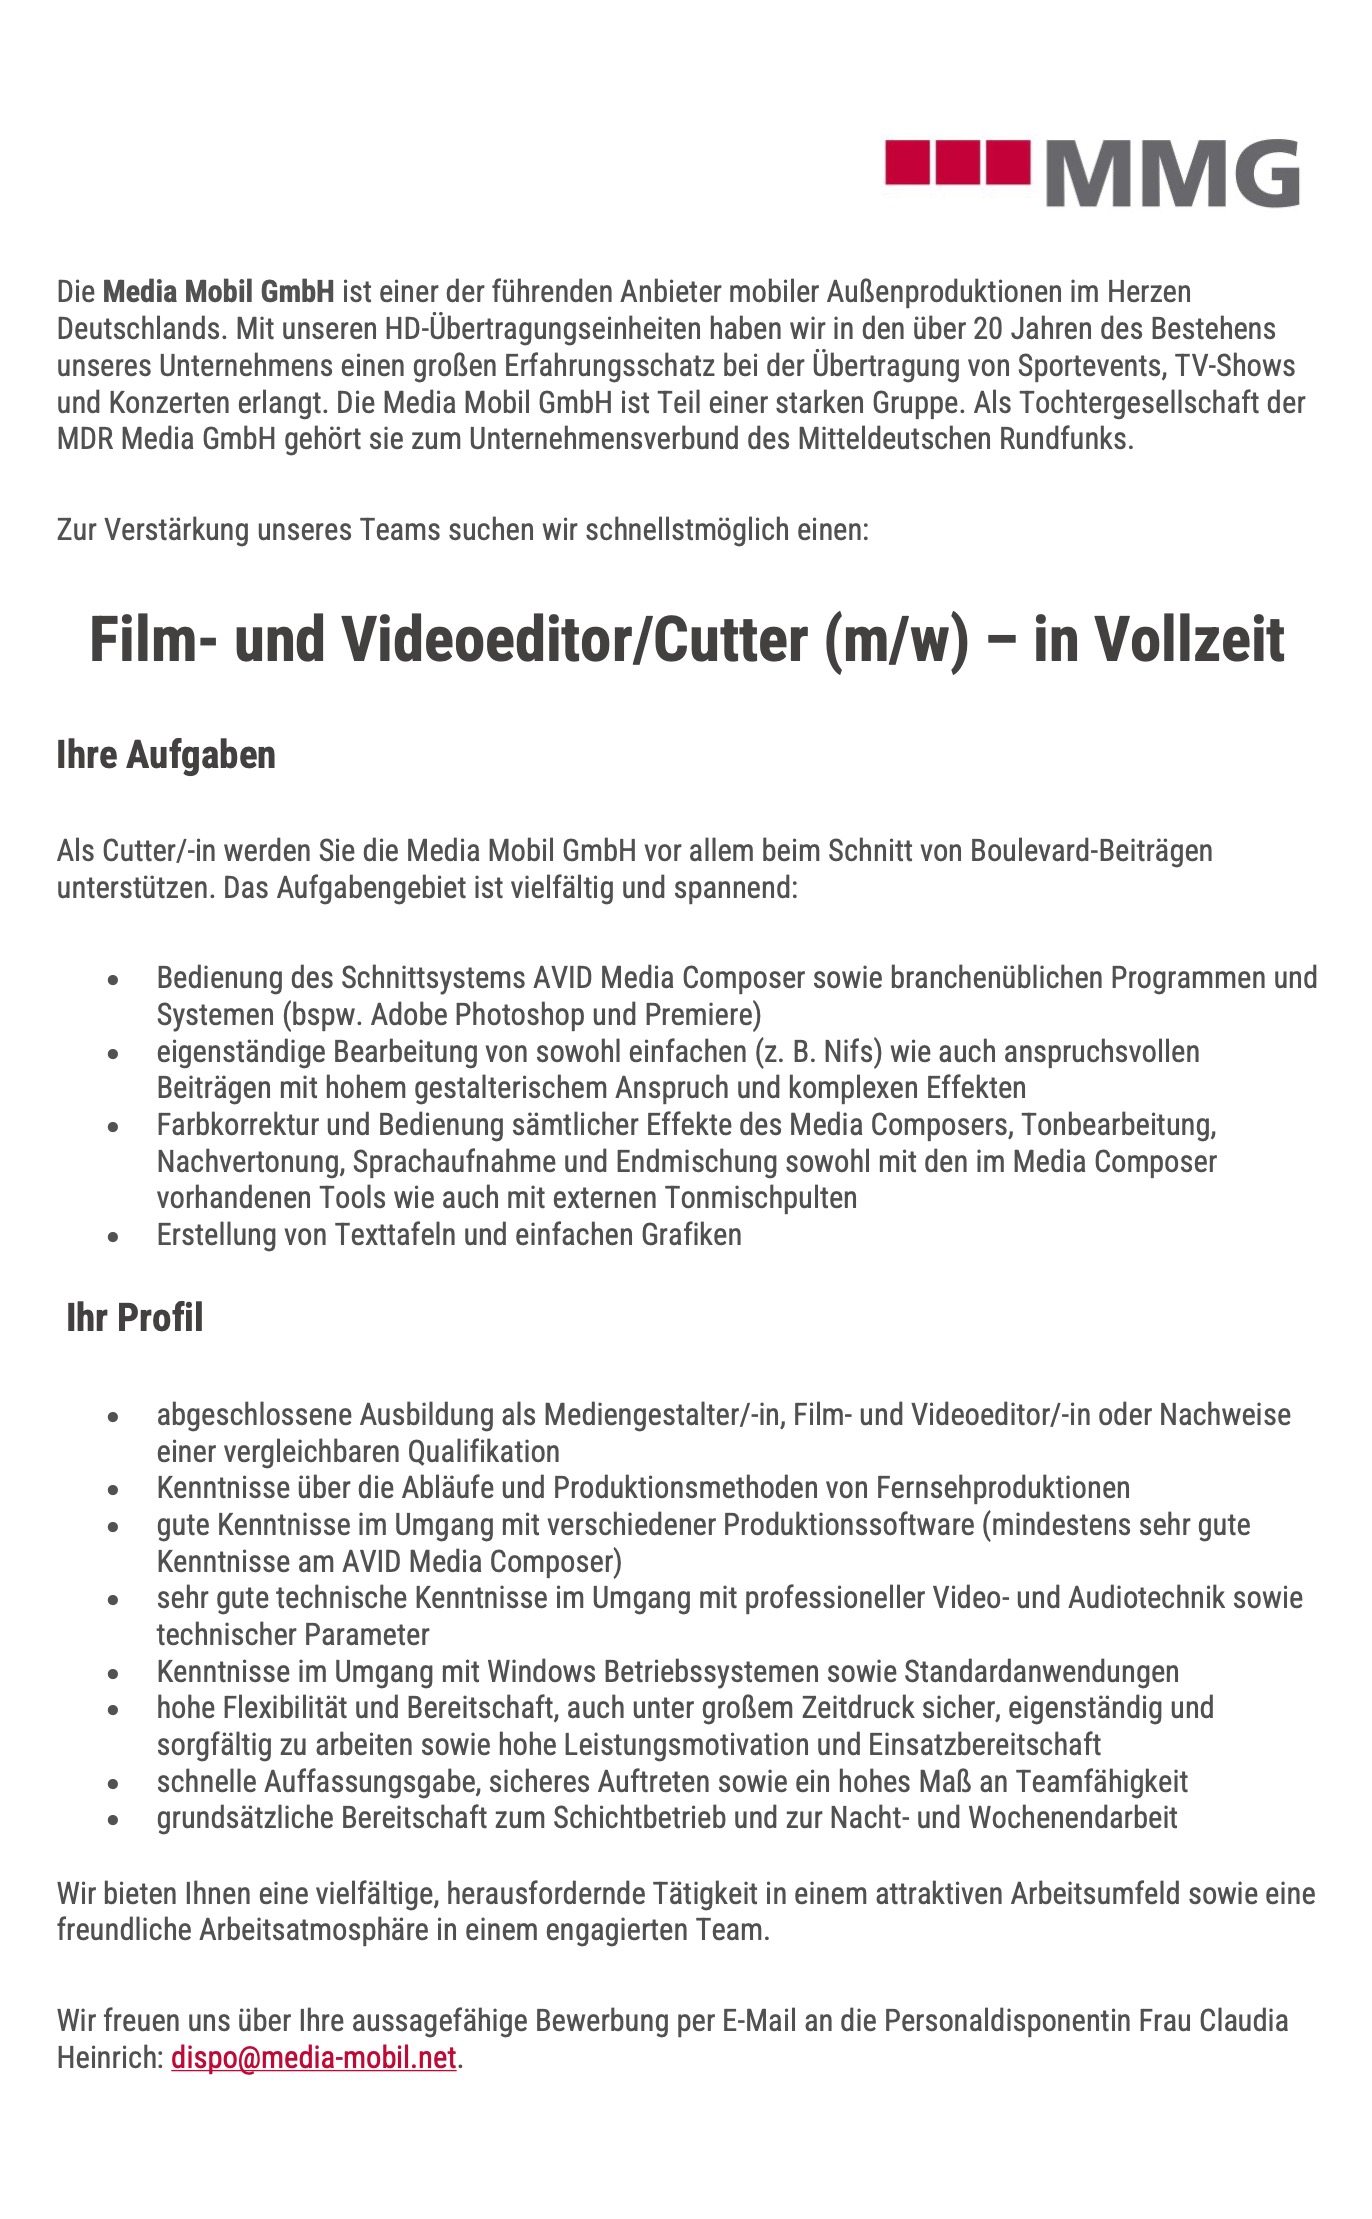 Film- und Videoeditor / Cutter (m/w) - in Vollzeit